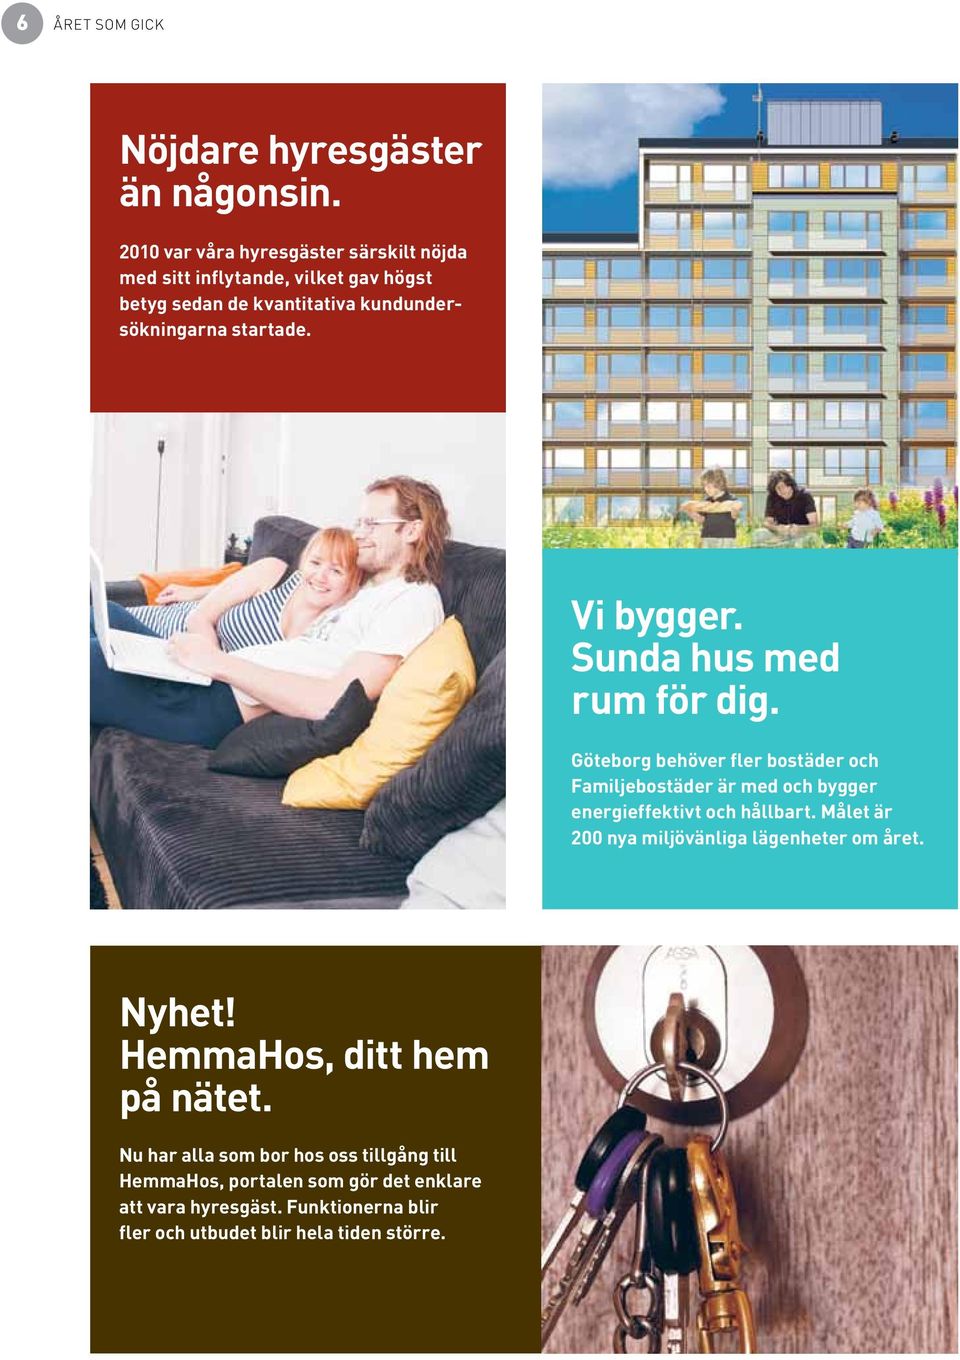 Vi bygger. Sunda hus med rum för dig. Göteborg behöver fler bostäder och Familjebostäder är med och bygger energieffektivt och hållbart.